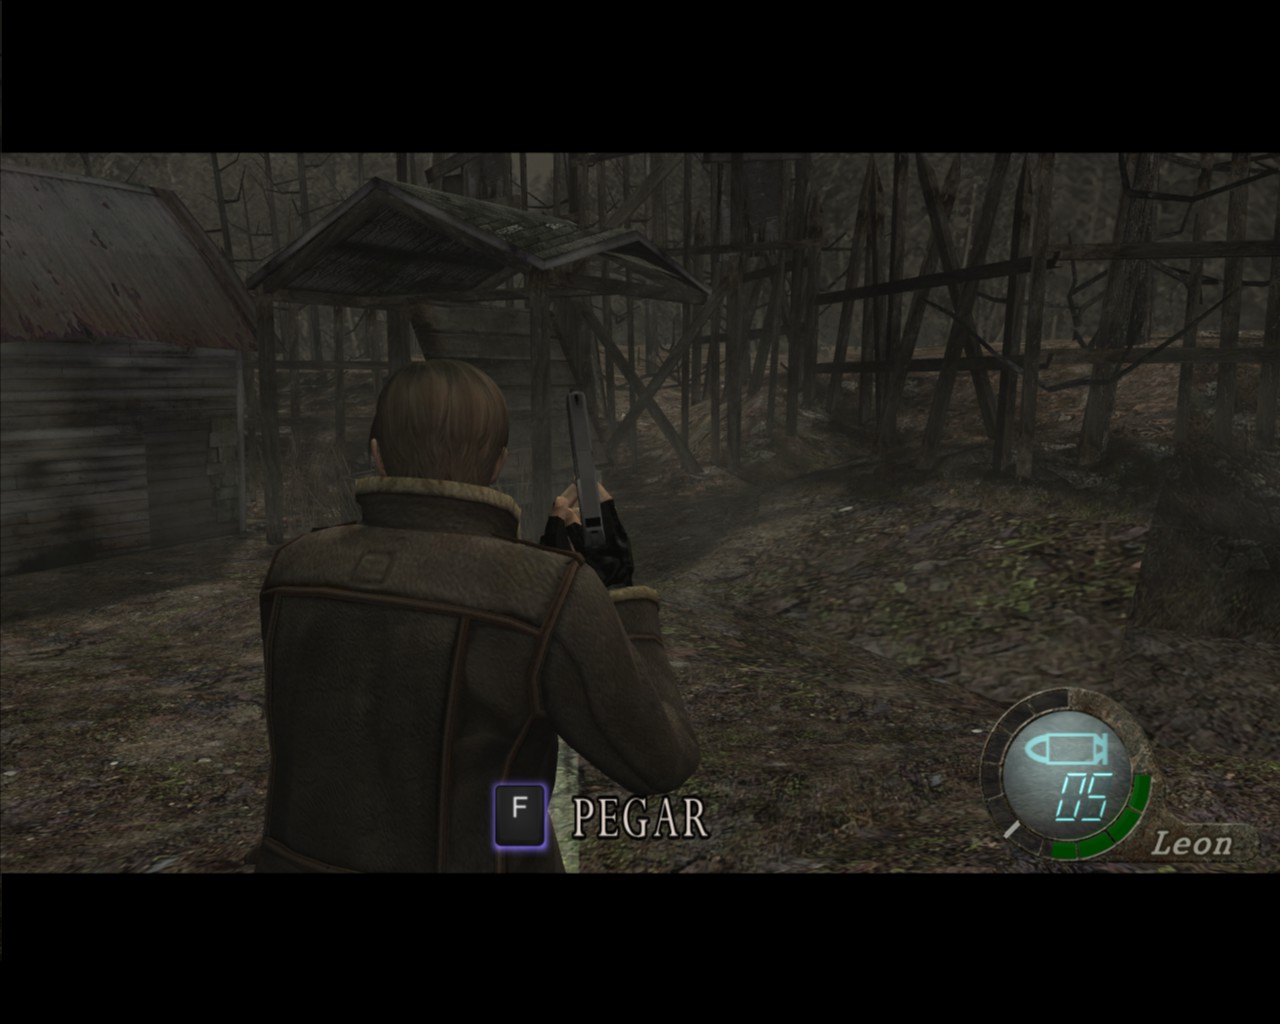 Download grátis da tradução PT-BR para Resident Evil 4 (sem propaganda) -  Rei dos Games!